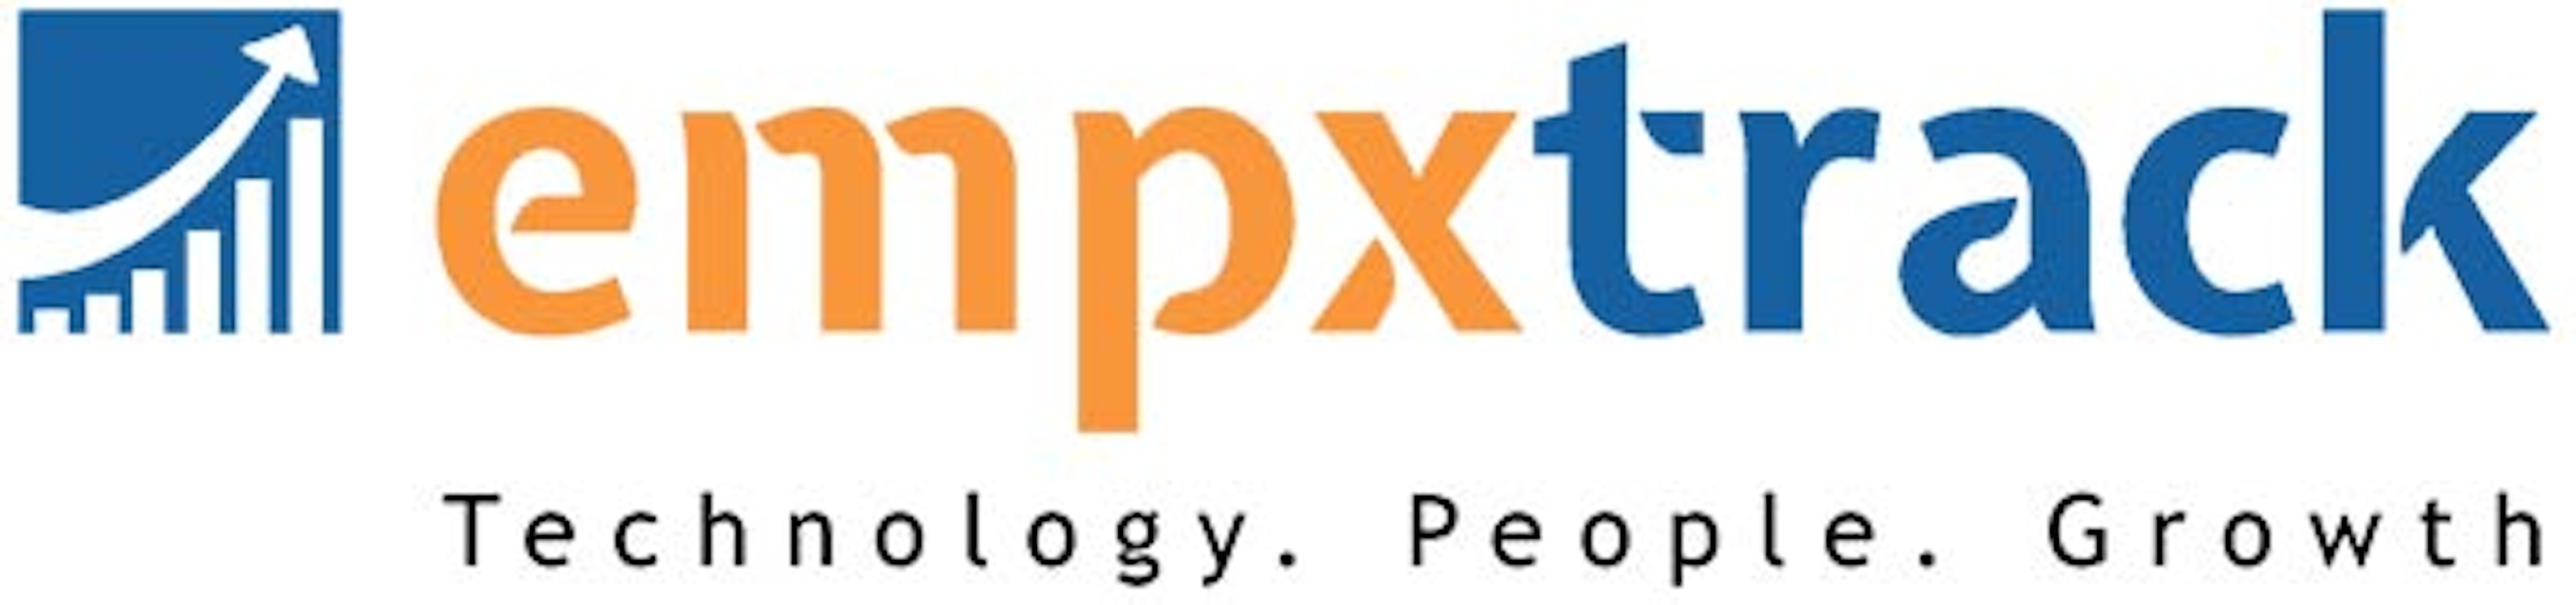 EmpXtrack Logo